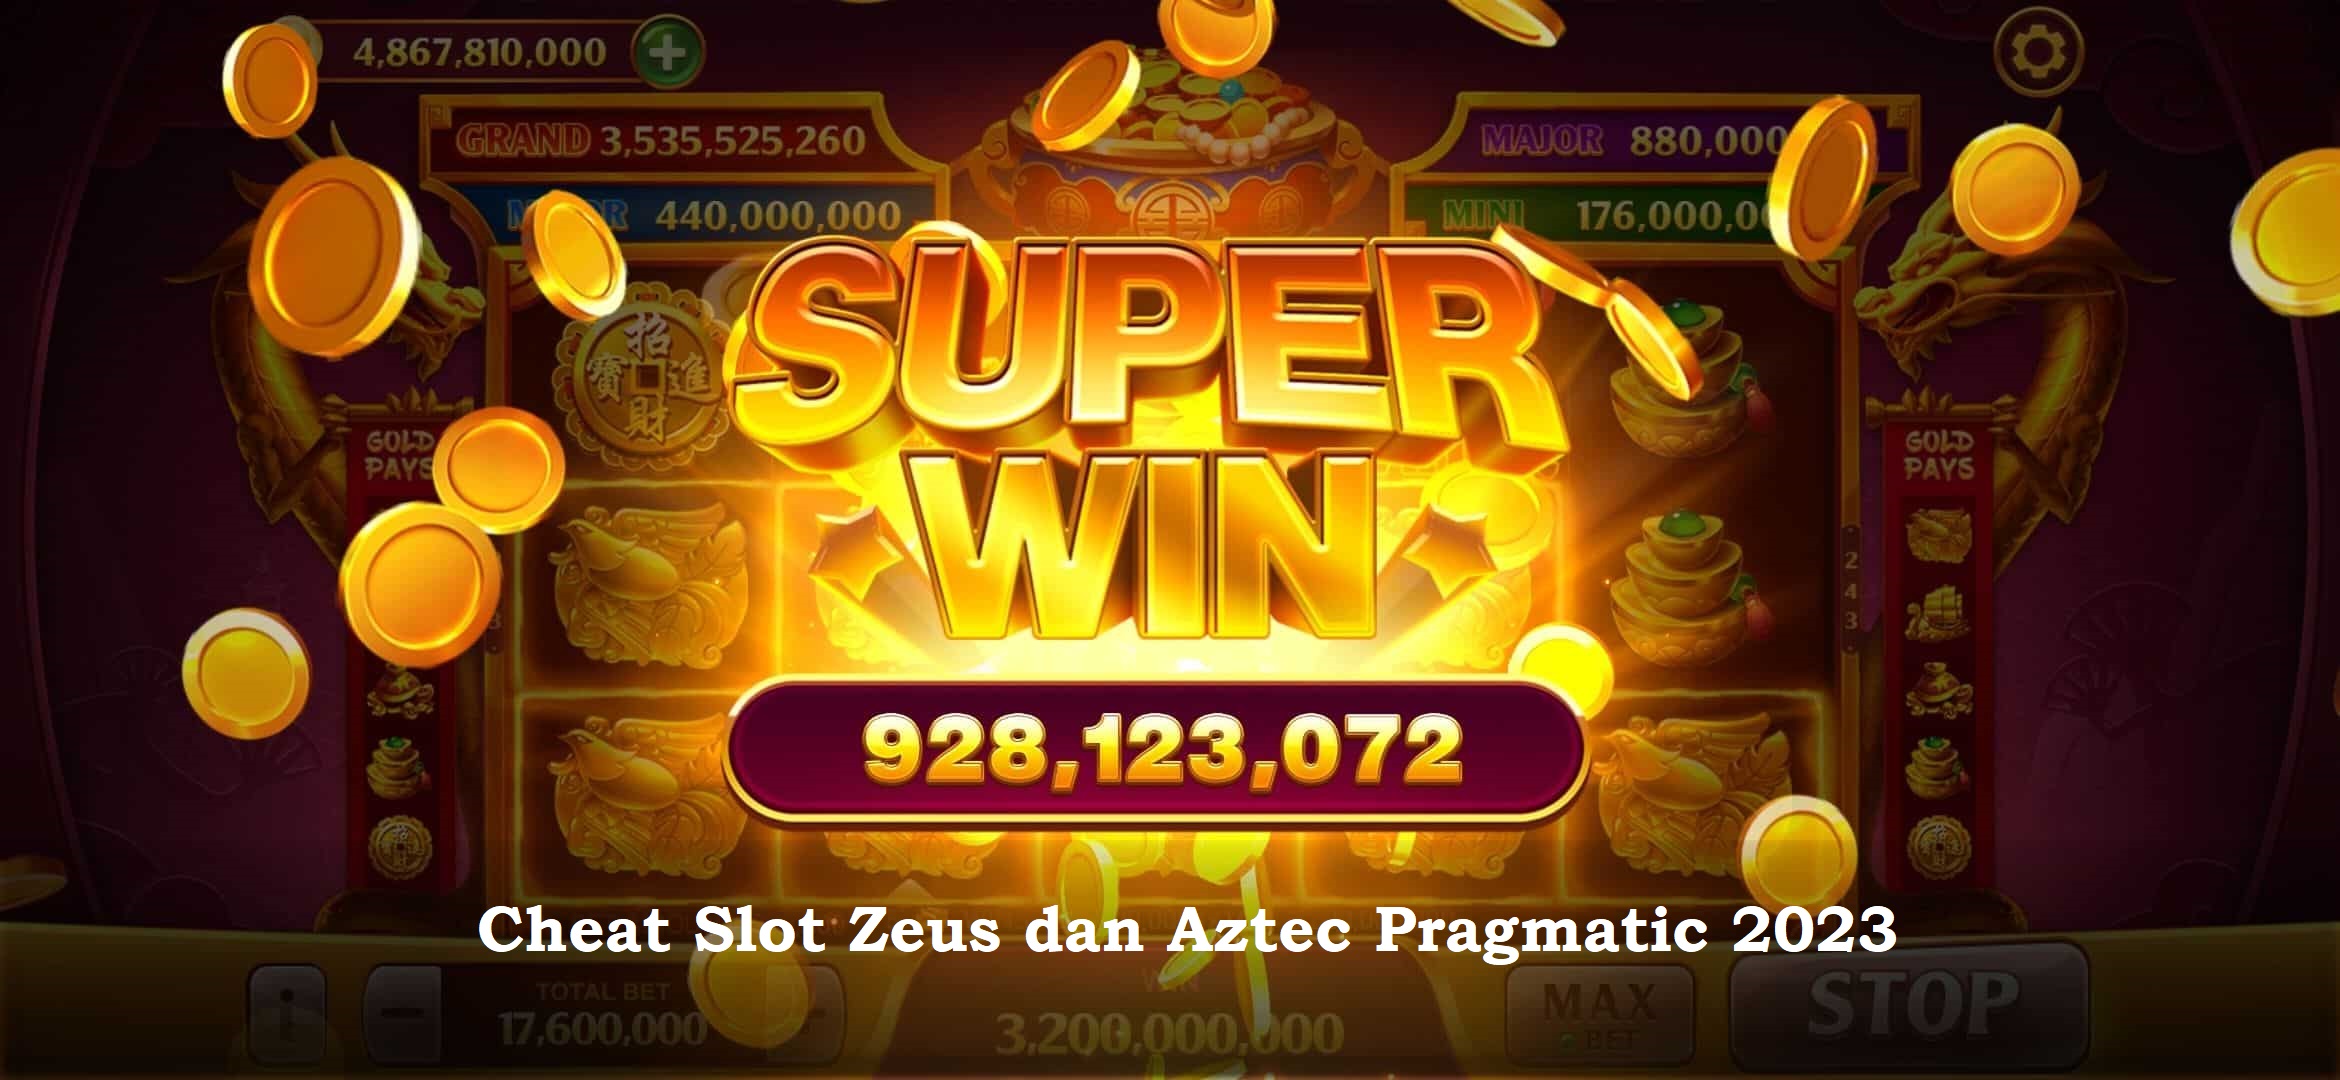 Cheat Slot Zeus dan Aztec 2023